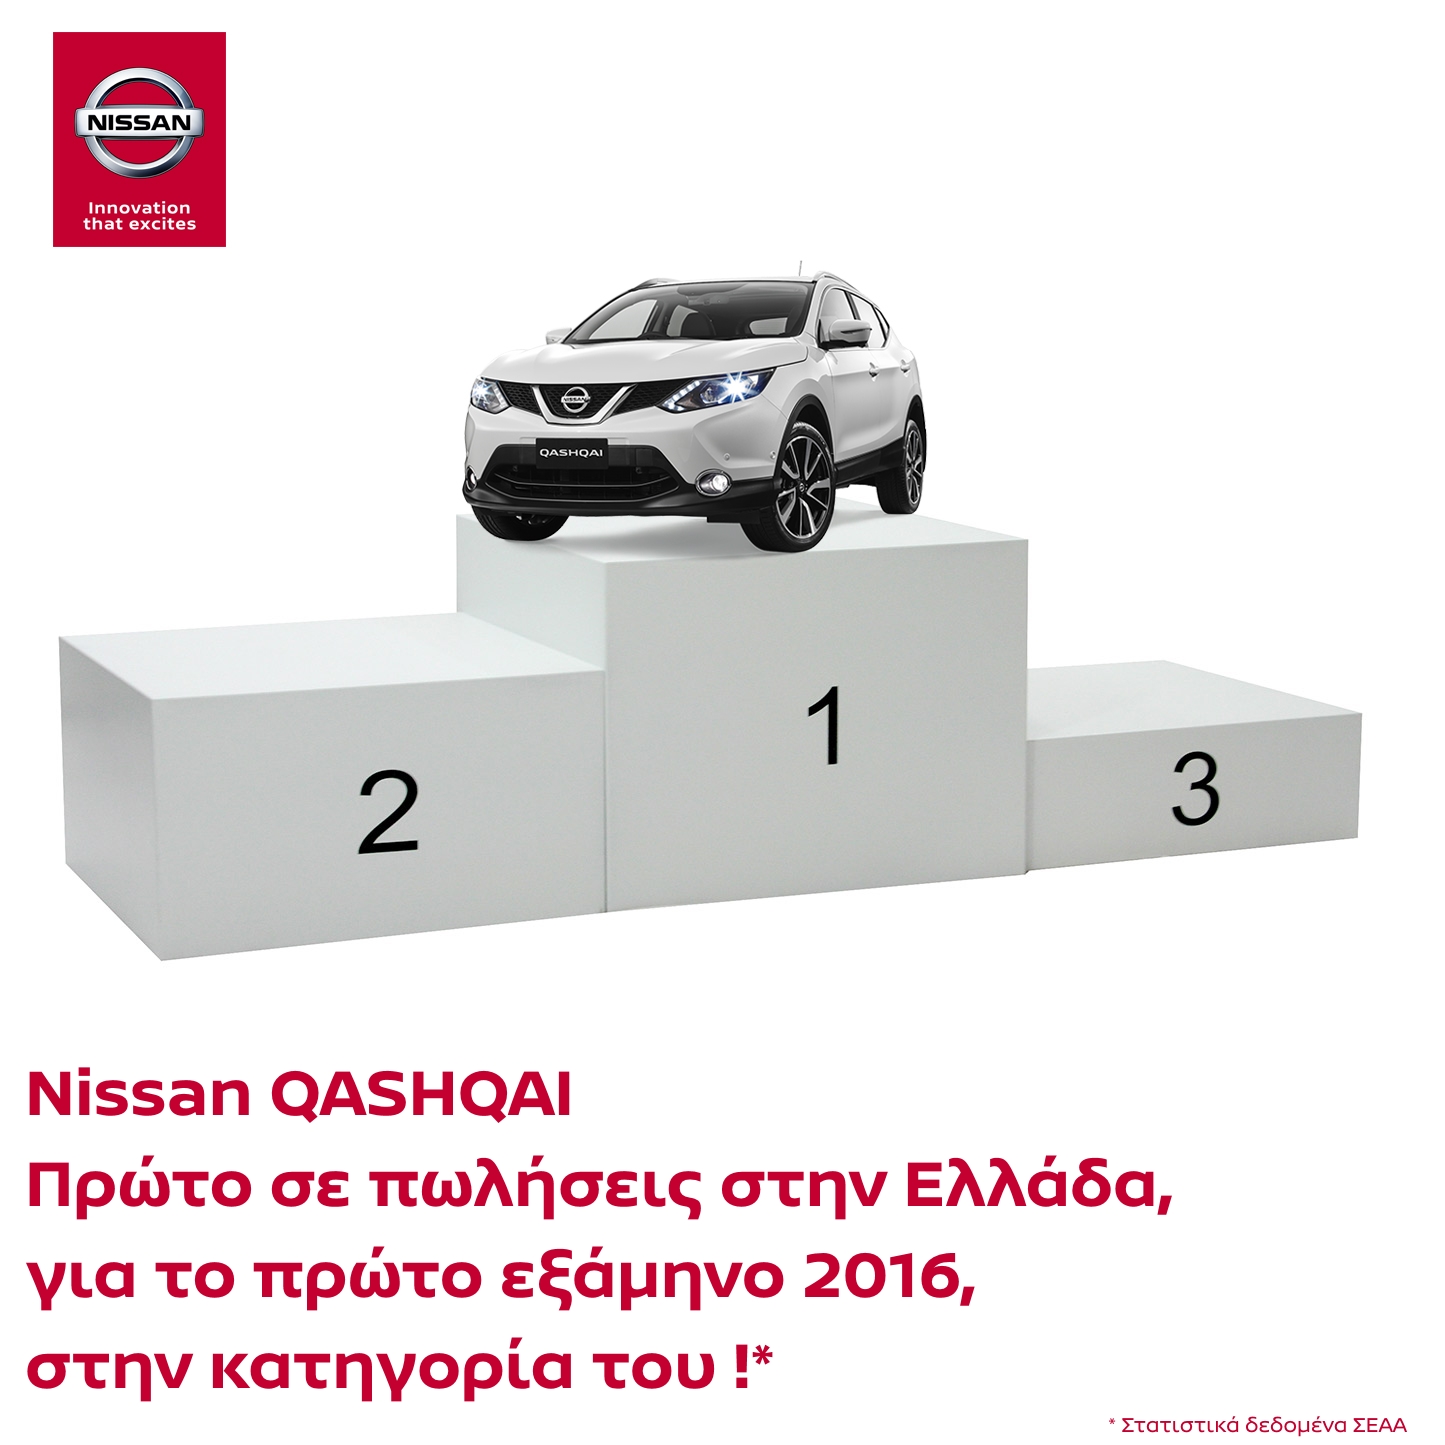 Qashqai2Bchamp Der Nissan QASHQAI ist landesweit der meistverkaufte in seiner Kategorie!